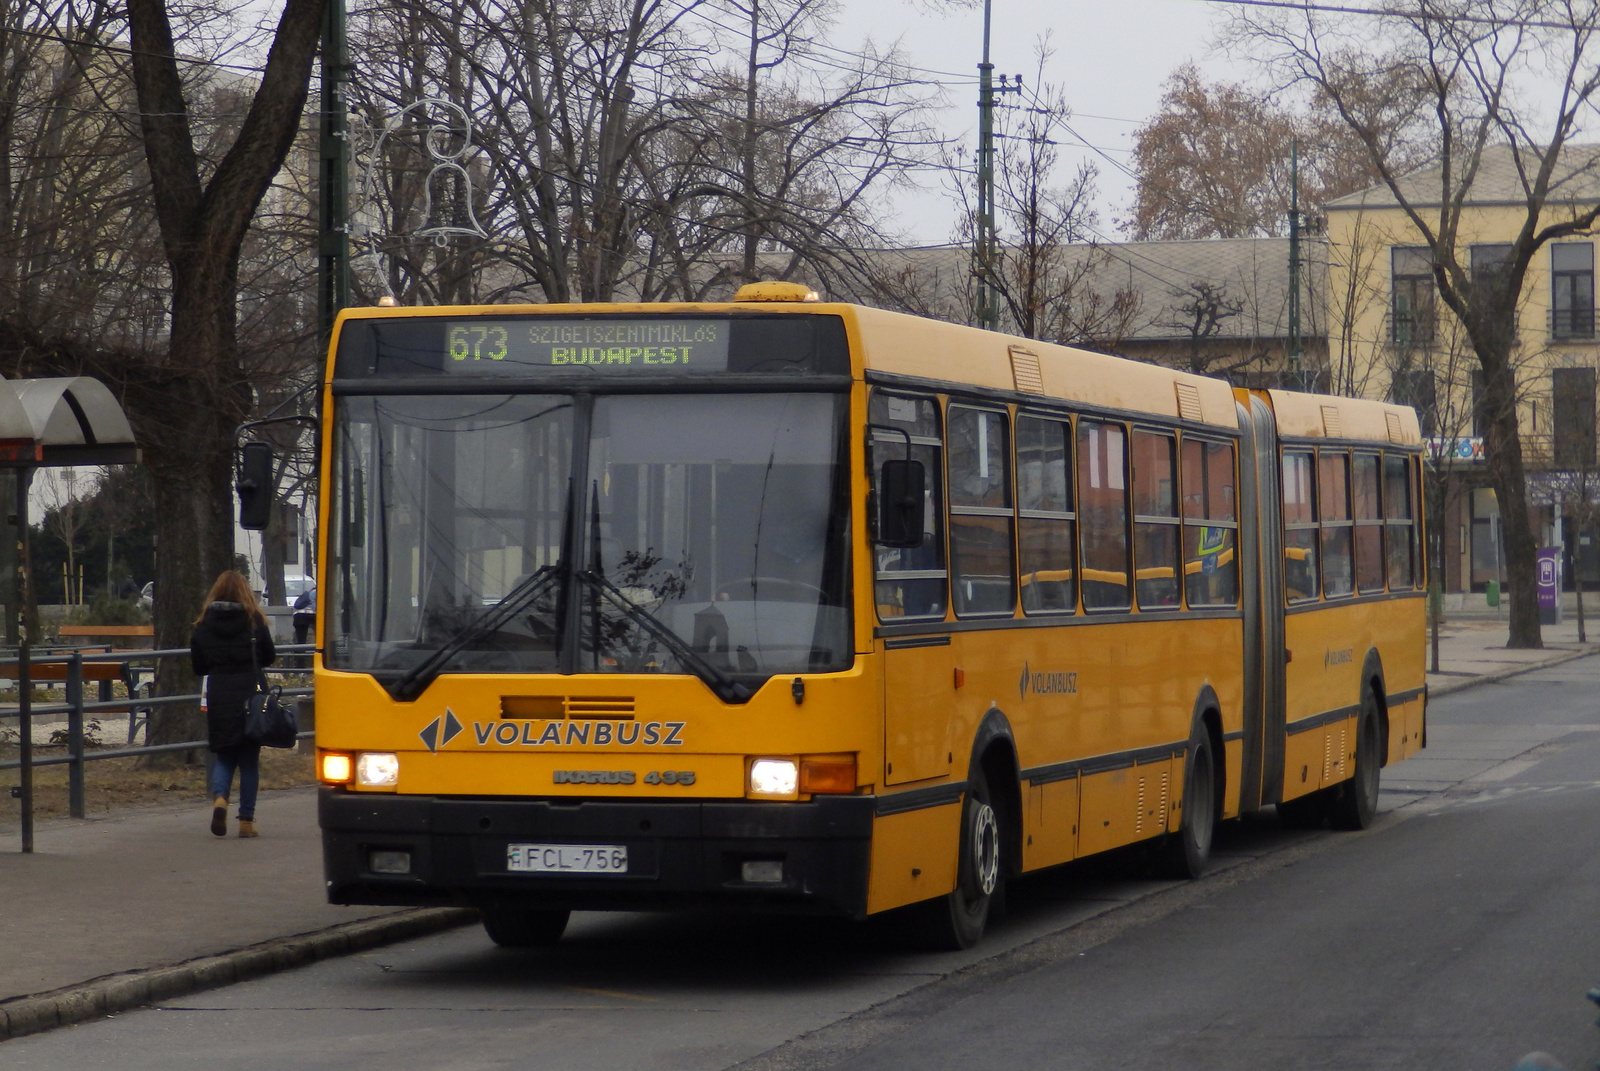 FCL-756 - Ikarus 435.14